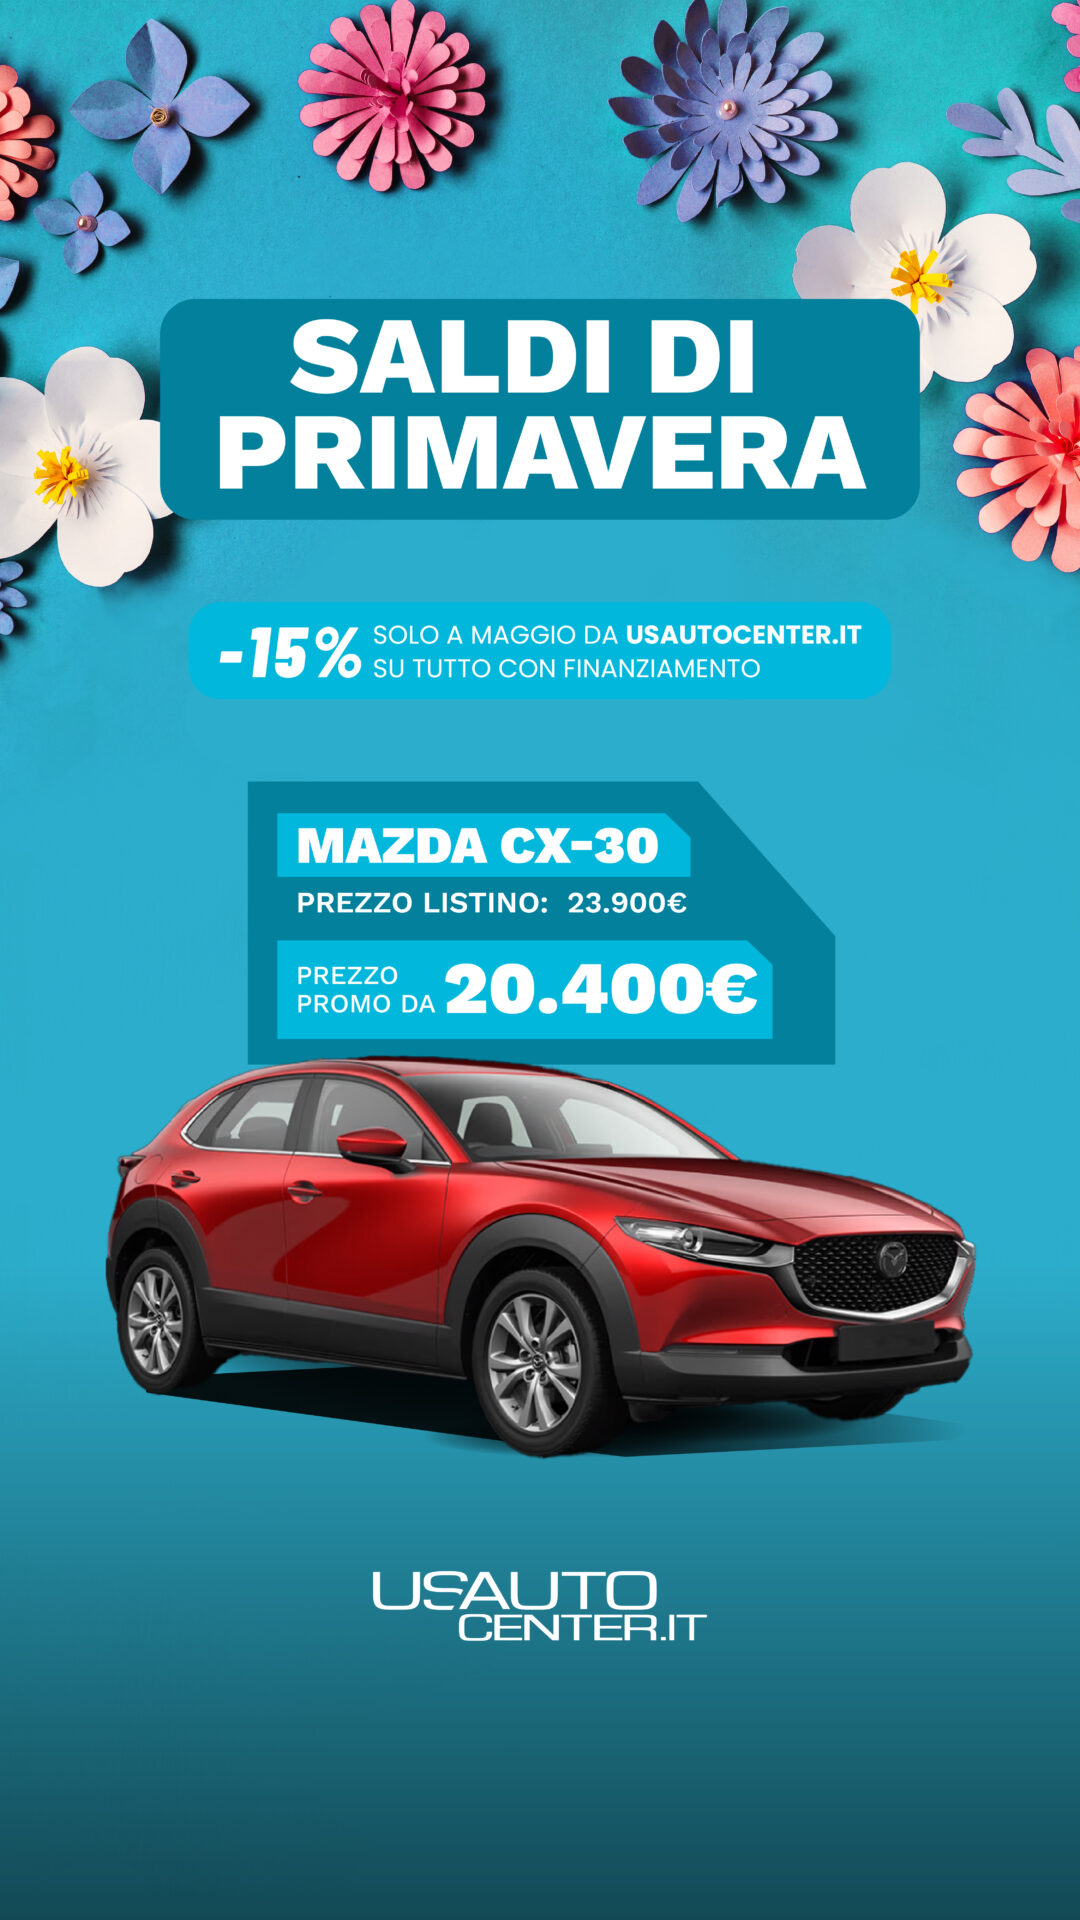 USAUTO_Promo_Saldi di Primavera_Mazda_1080x1920